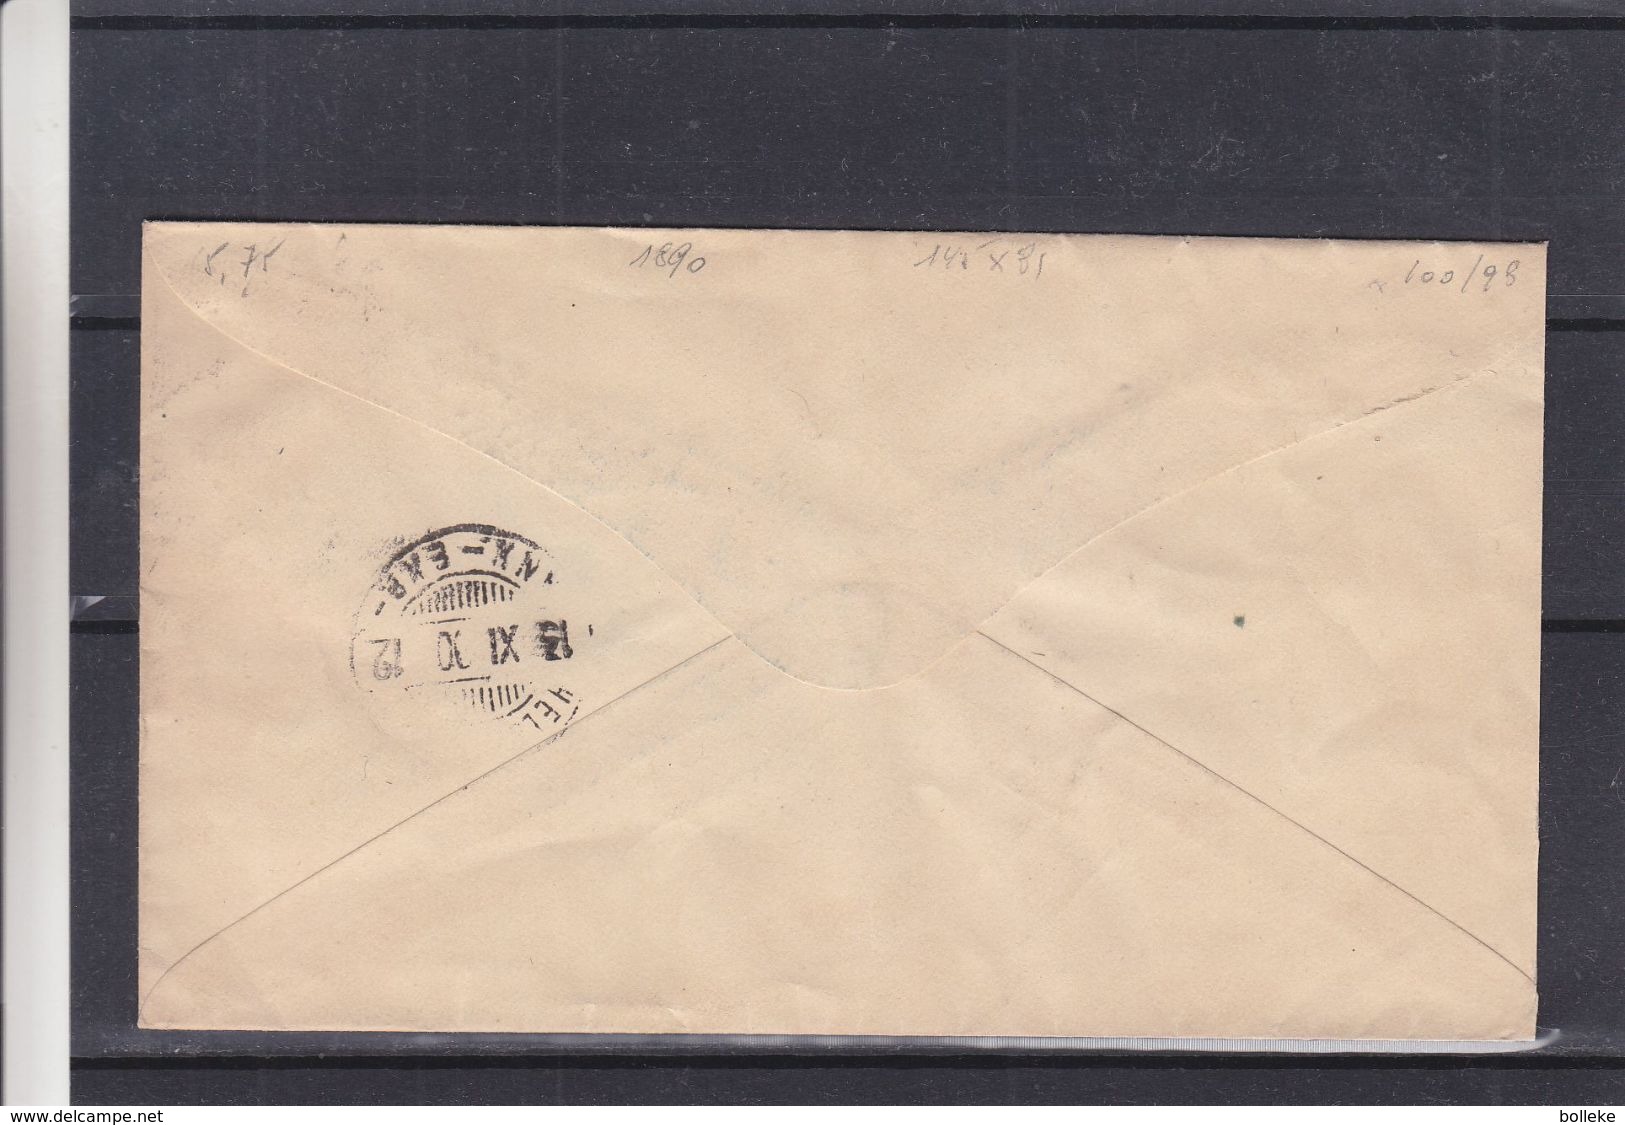 Russie - Lettre De 1890 Adressée Au Sergent Major Du Bataillon Finlandais - Entier Postal - Format 145 X 91 - - Briefe U. Dokumente